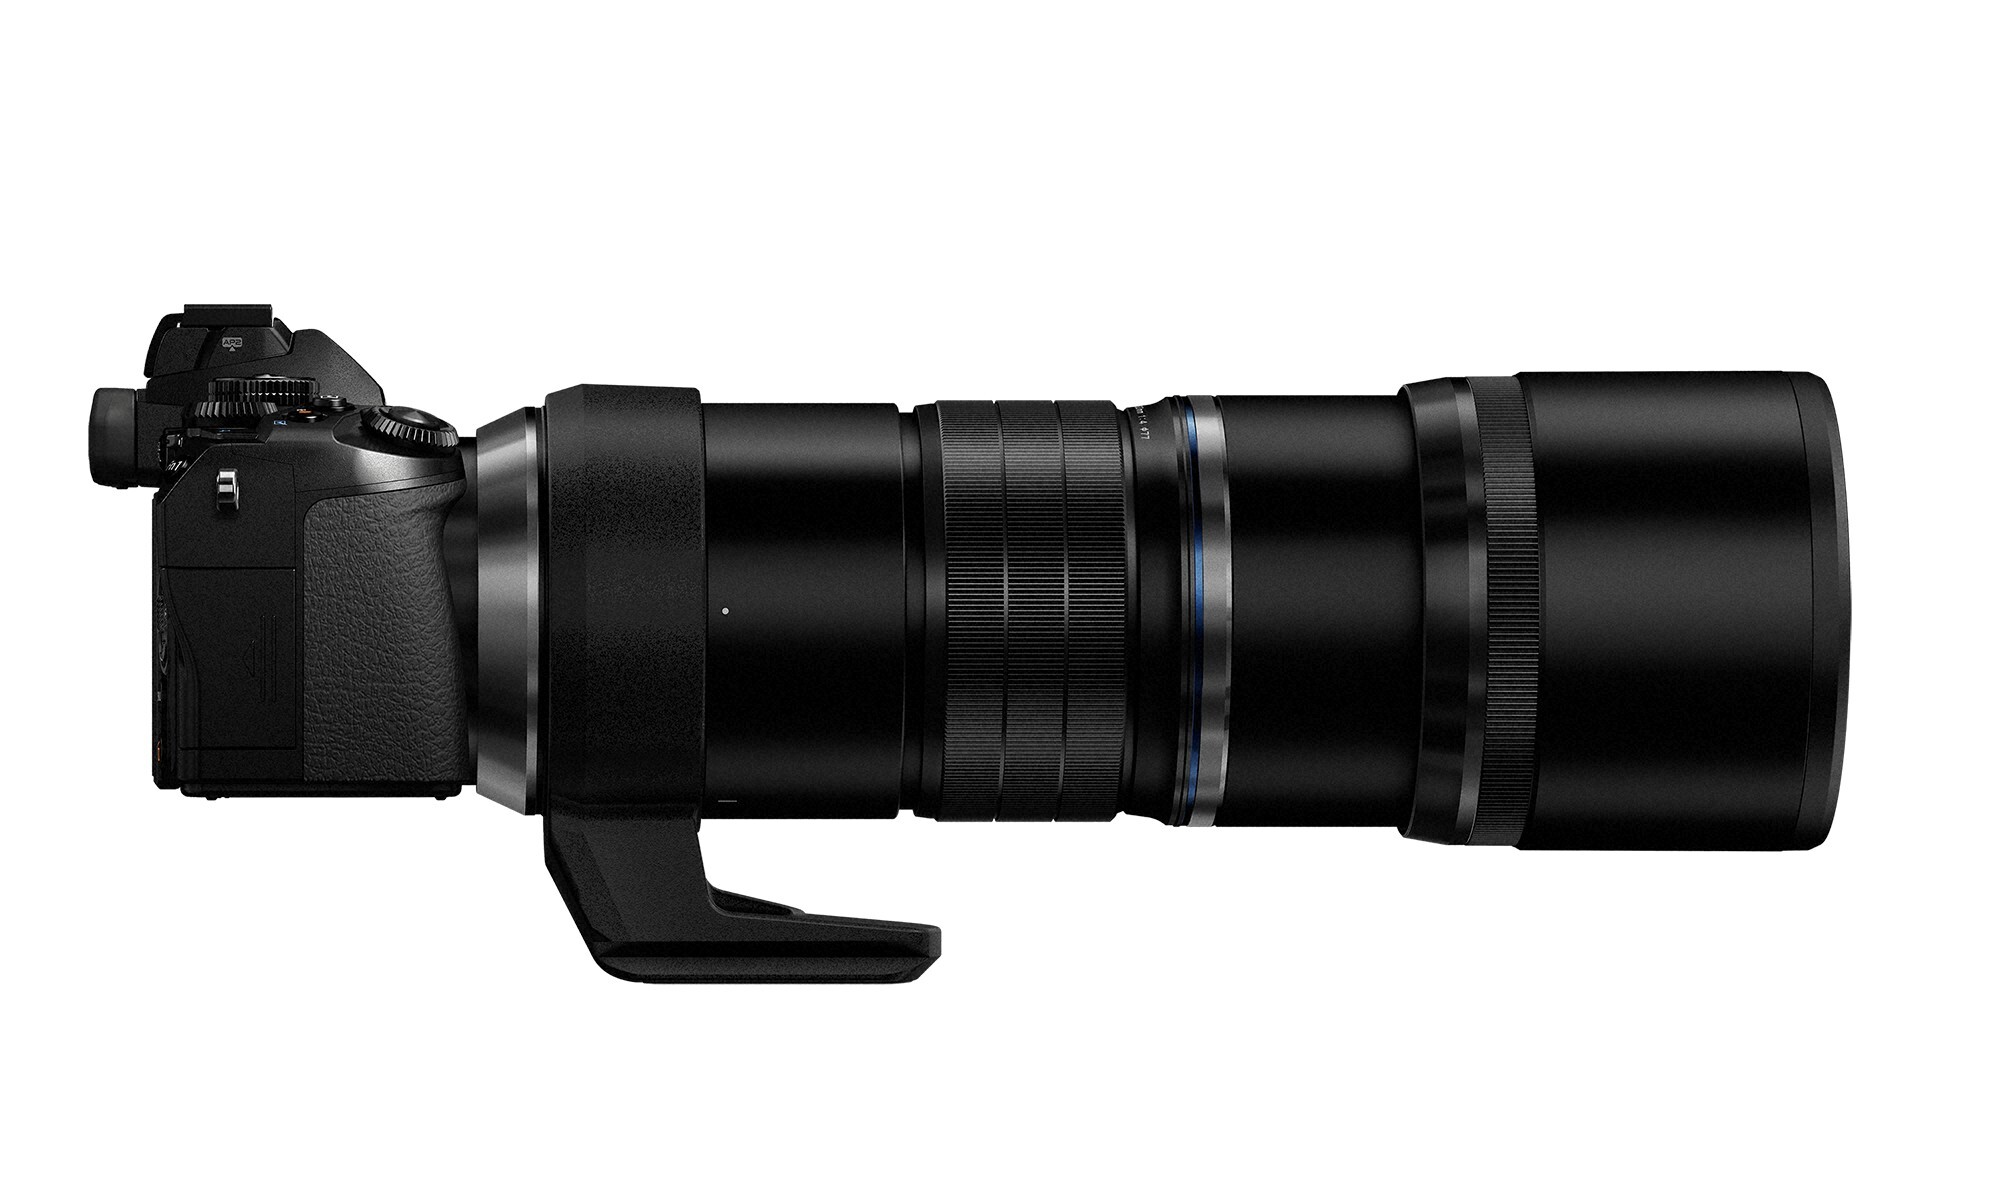 Ống kính Olympus M.Zuiko Digital ED 300mm F/4 IS Pro